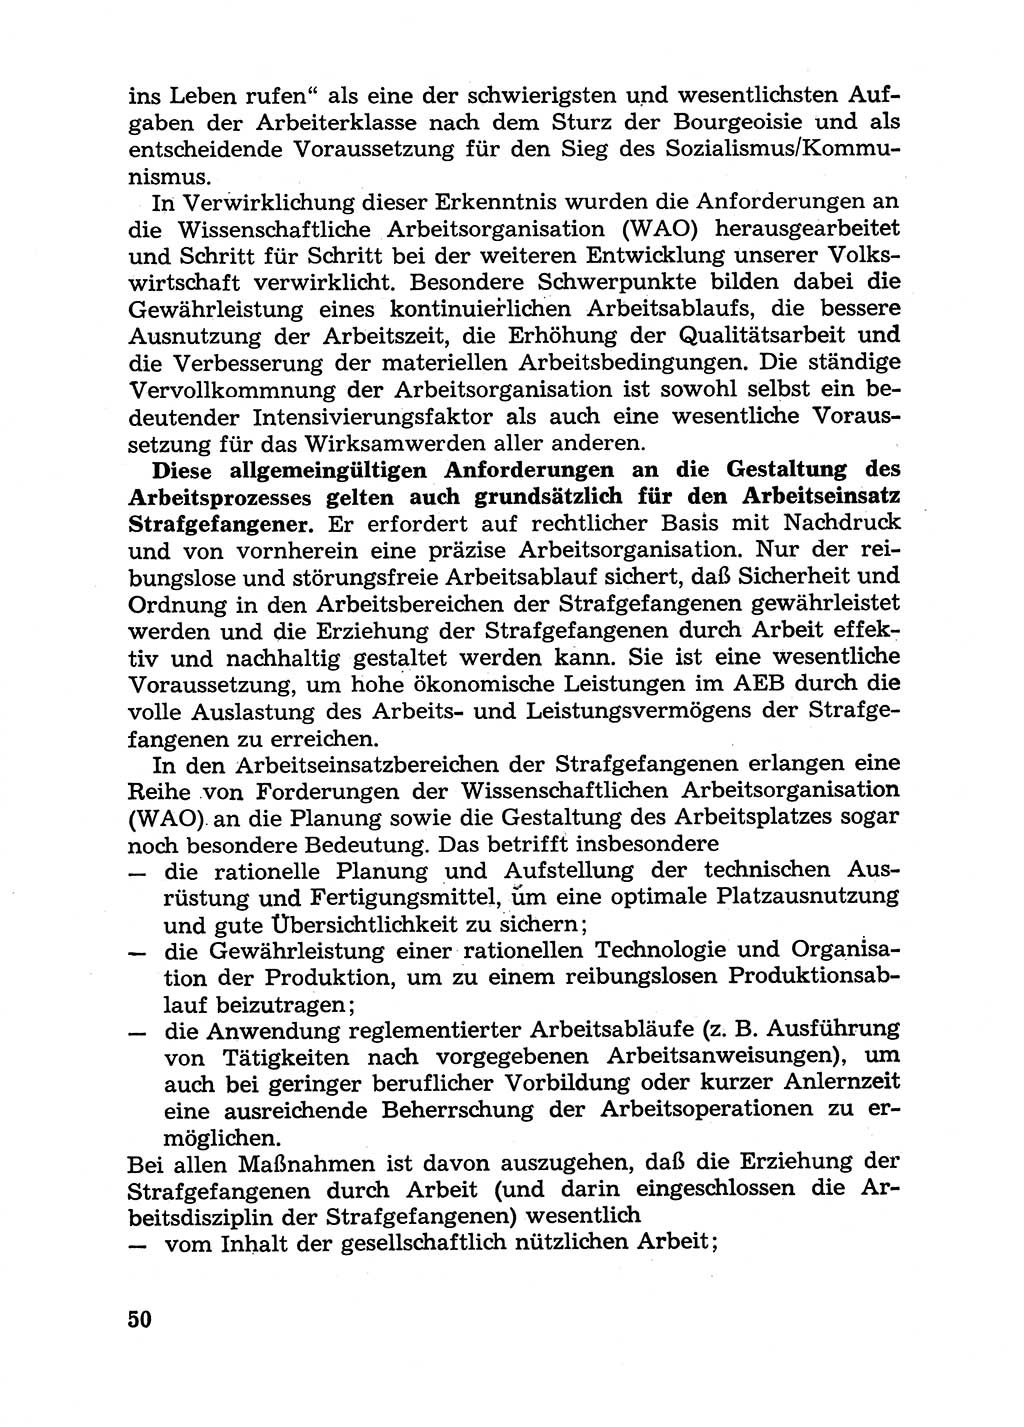 Handbuch für Betriebsangehörige, Abteilung Strafvollzug (SV) [Ministerium des Innern (MdI) Deutsche Demokratische Republik (DDR)] 1981, Seite 50 (Hb. BA Abt. SV MdI DDR 1981, S. 50)